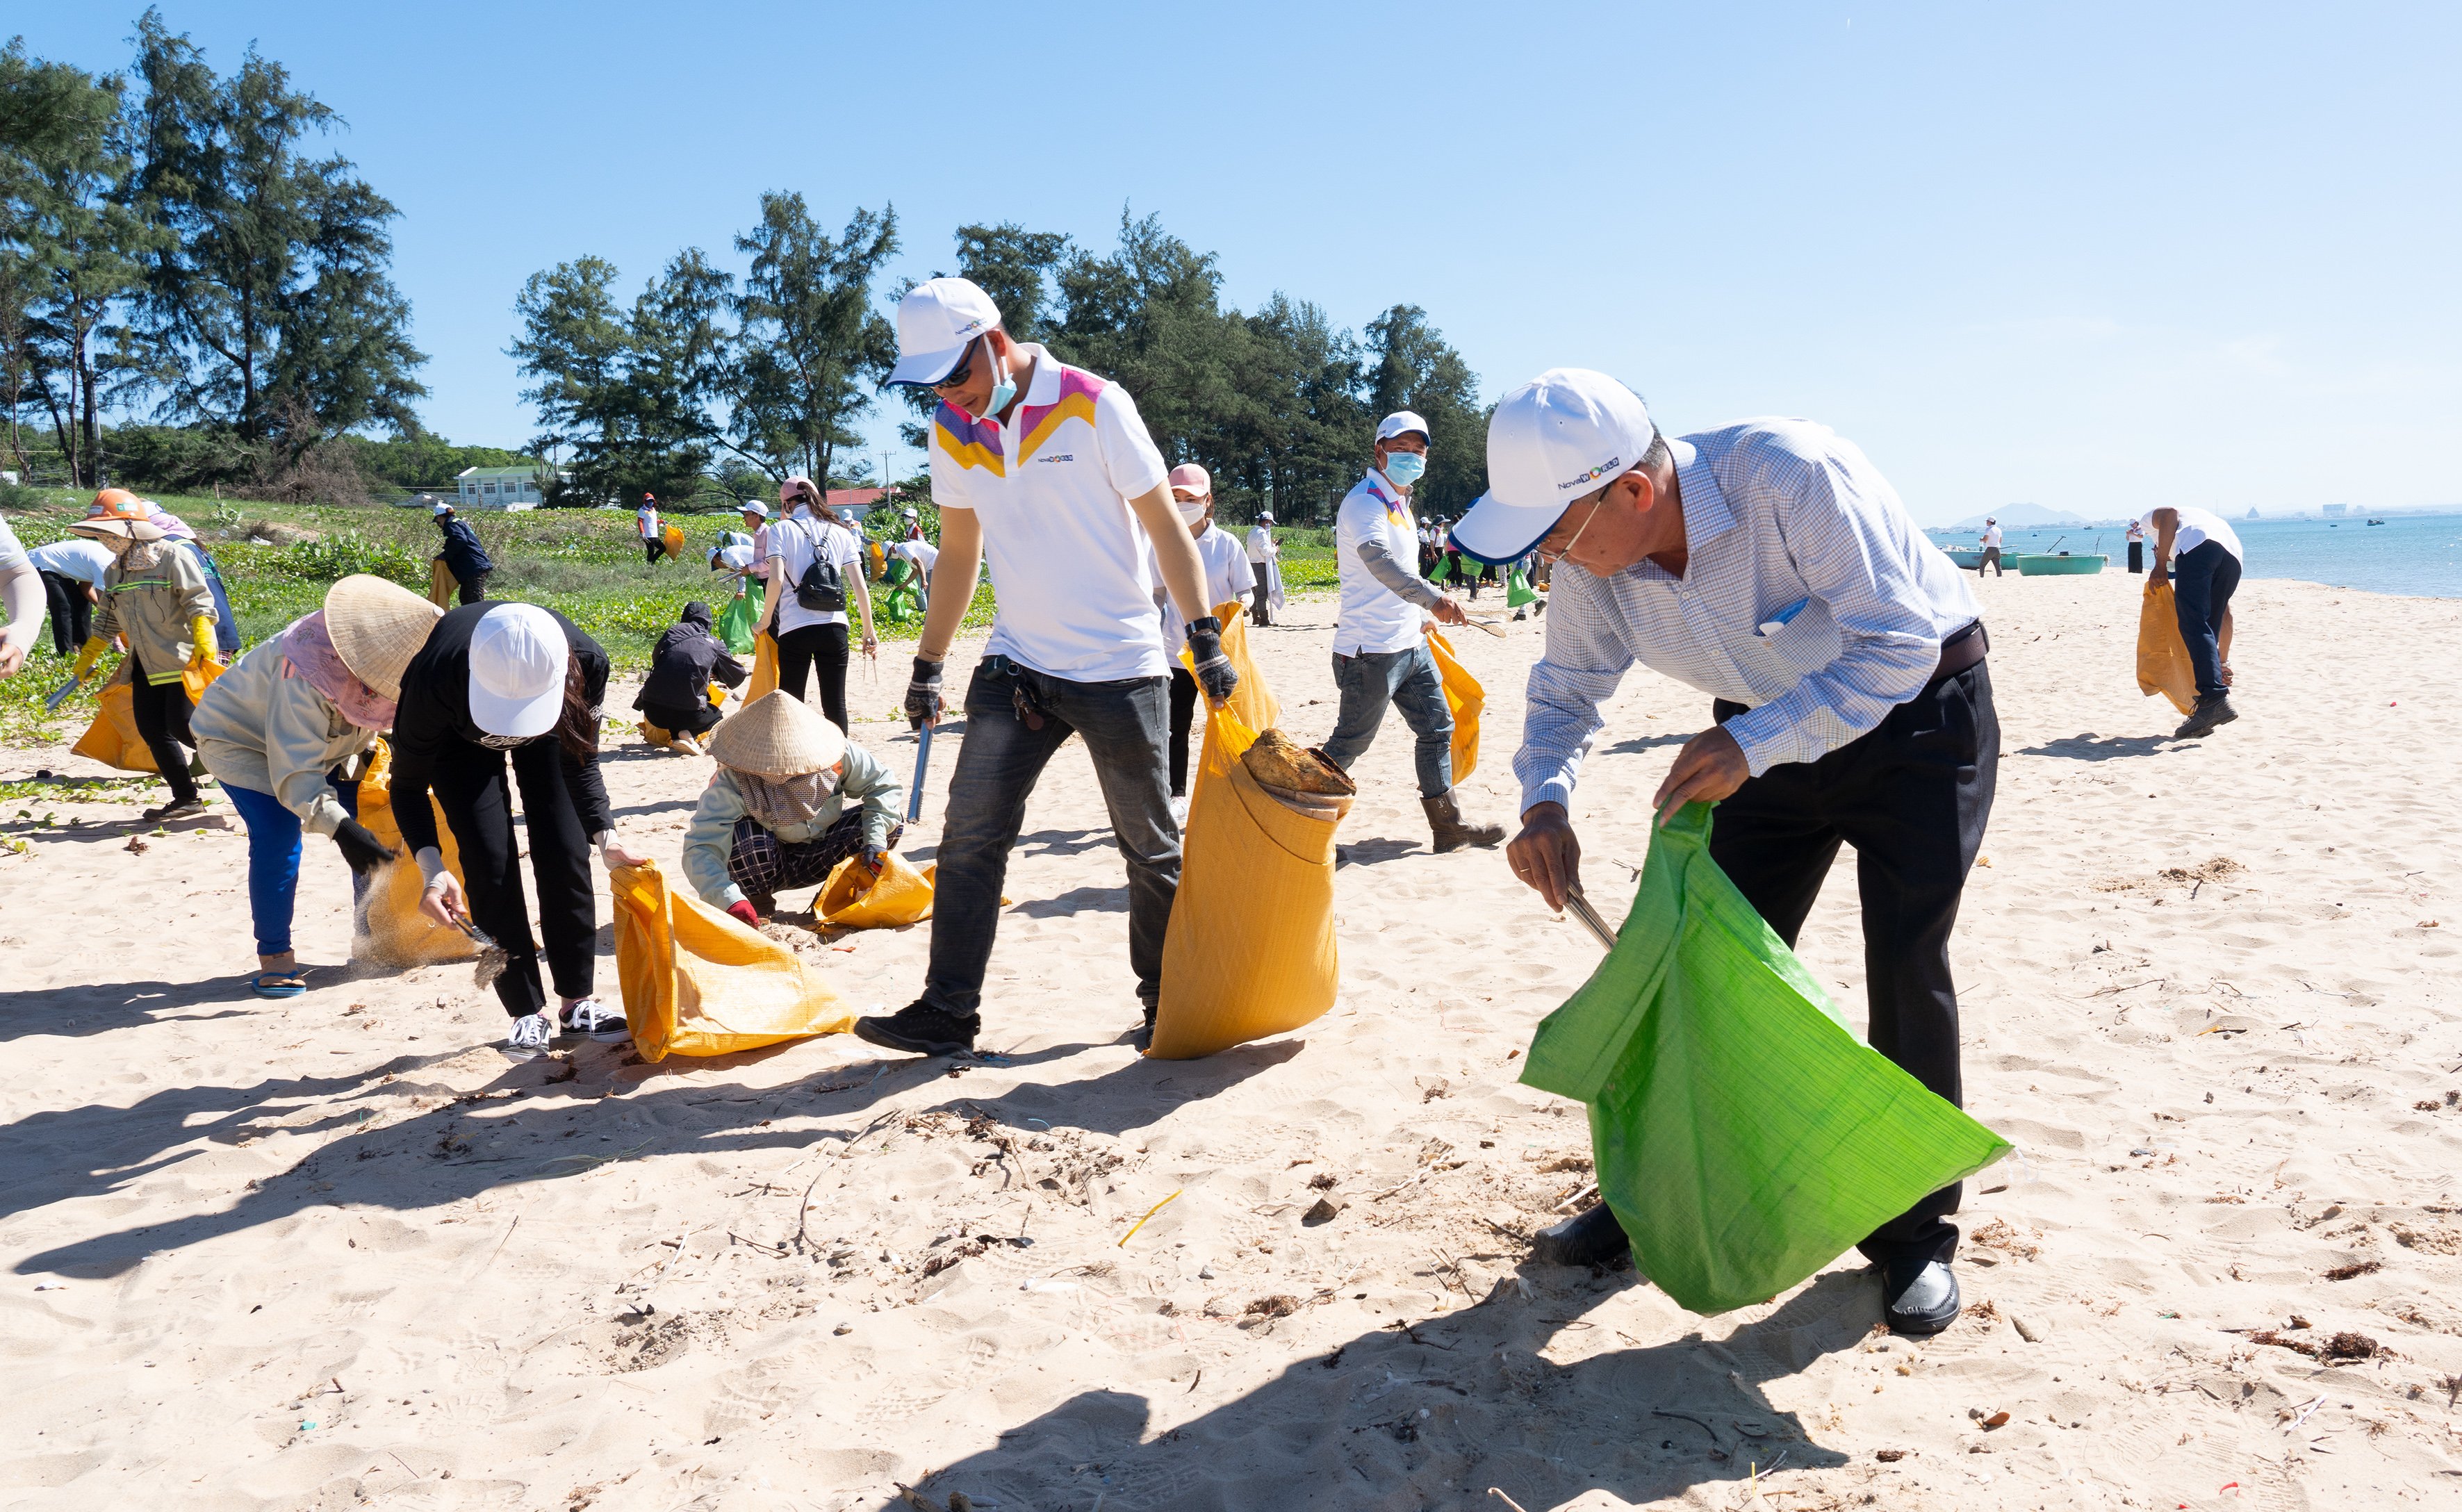 Phó chủ tịch UBND TP. Phan Thiết Lê Văn Chơn tham gia cùng người dân nhặt rác tại các bãi biển ở địa phương